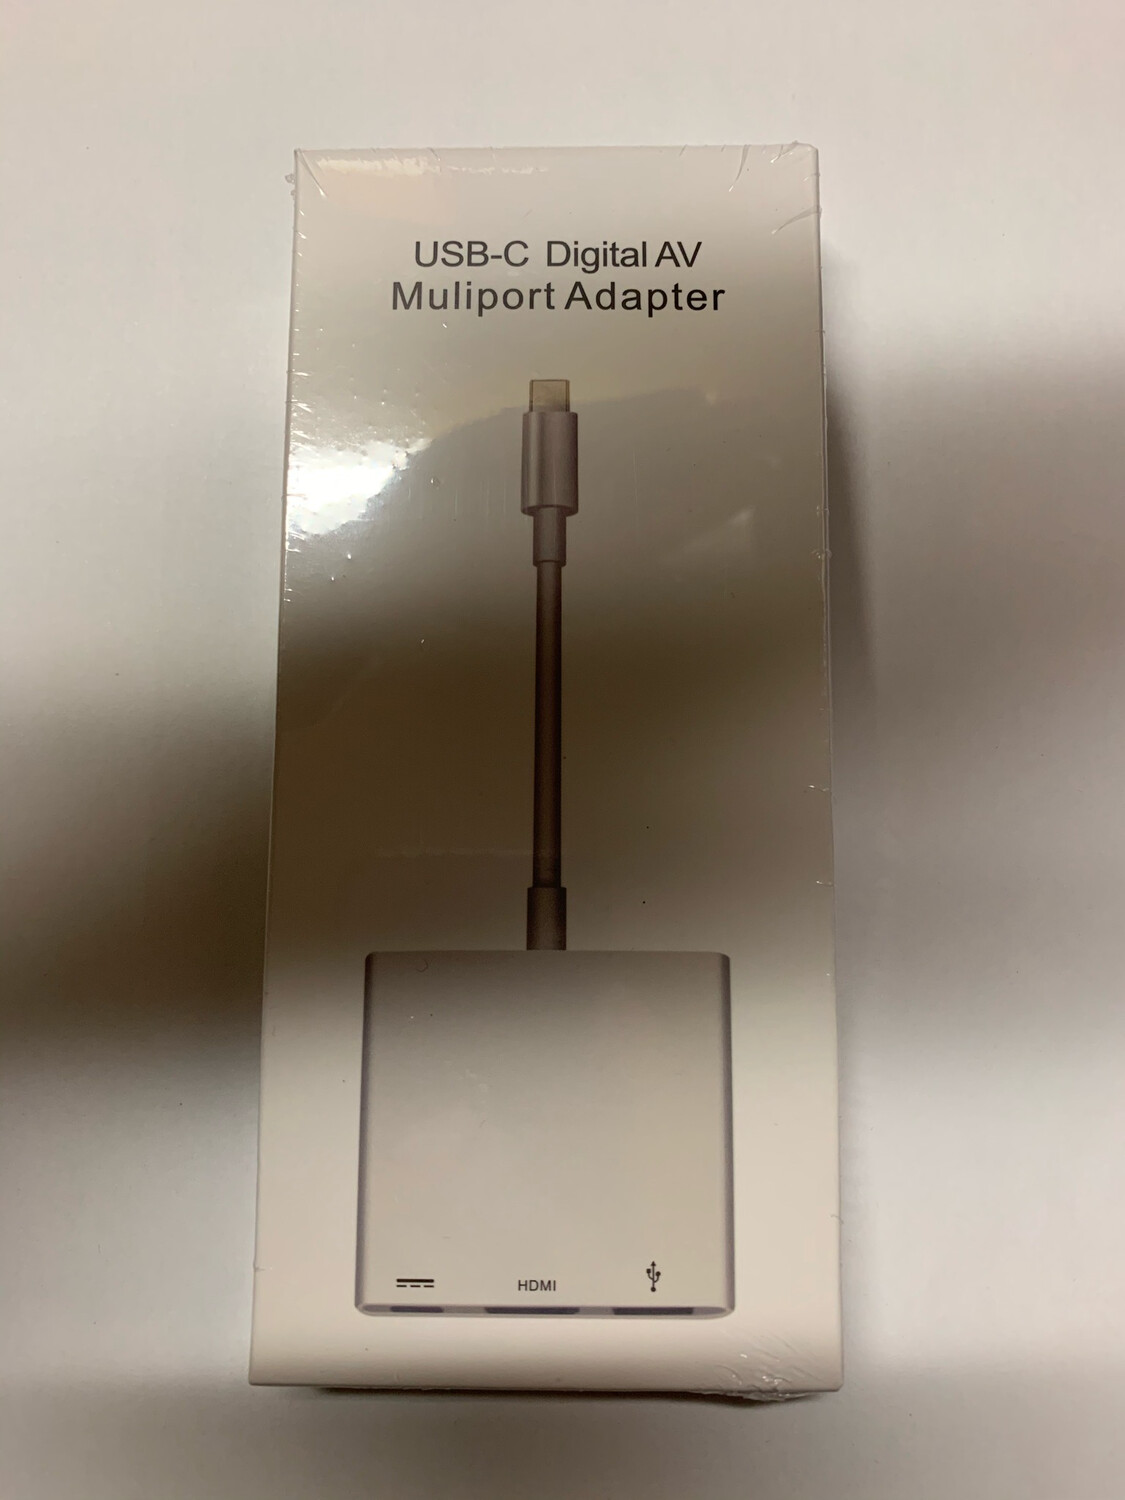 USB-C Digital AV Muliport Adapter